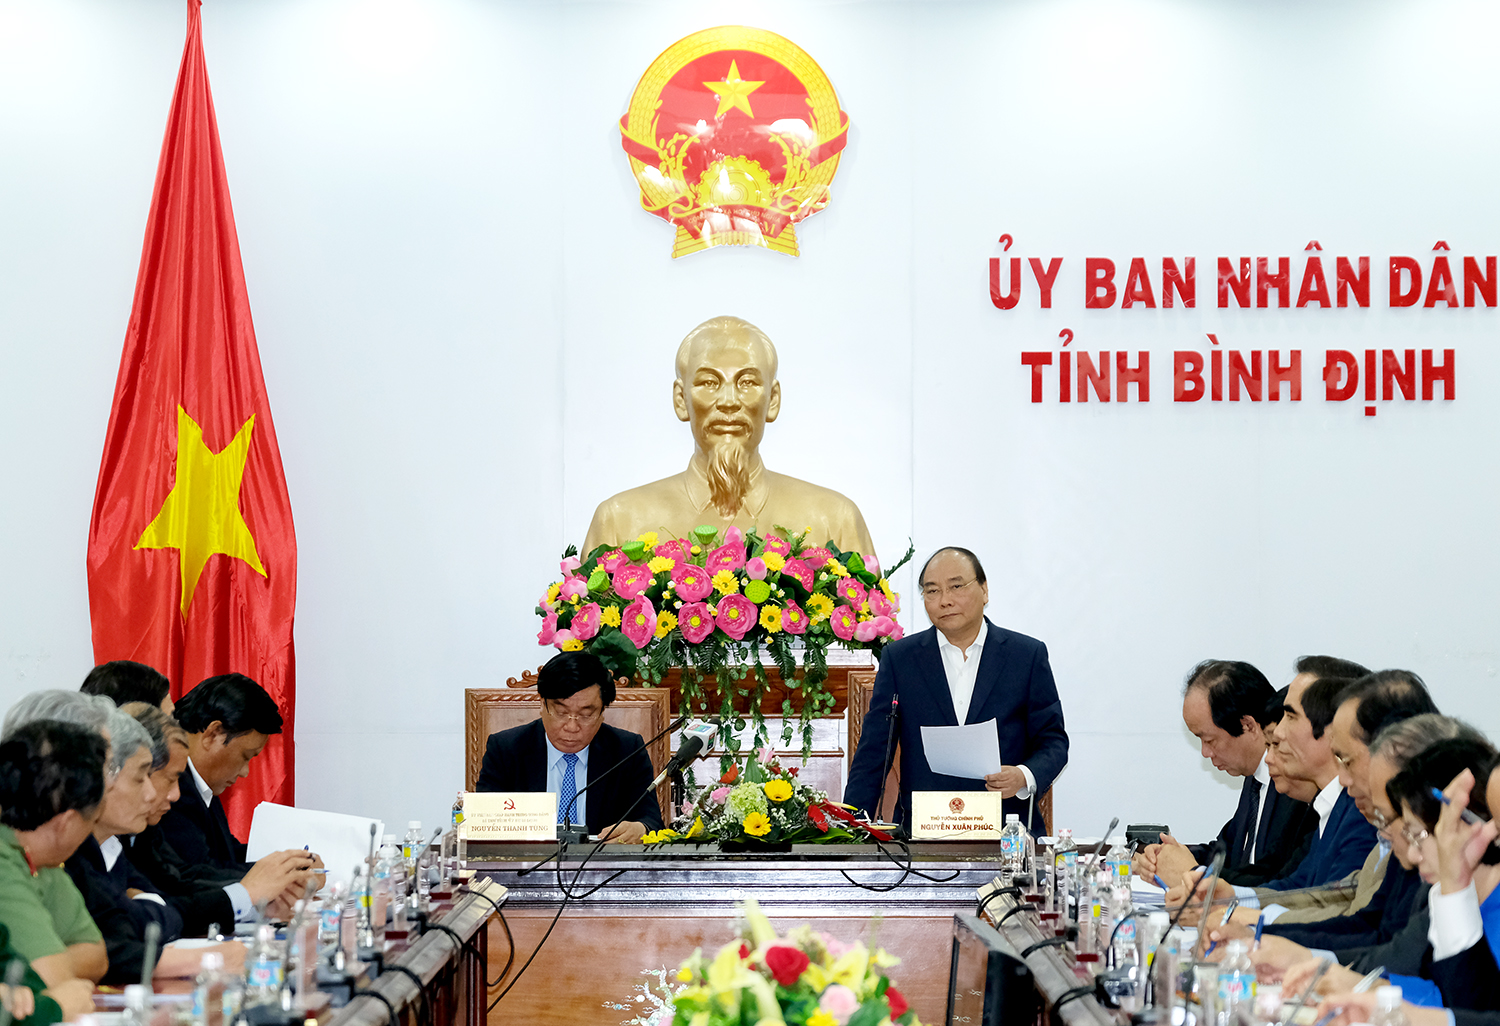 Thủ tướng mong muốn lãnh đạo tỉnh Bình Định phải thể hiện khát vọng phát triển